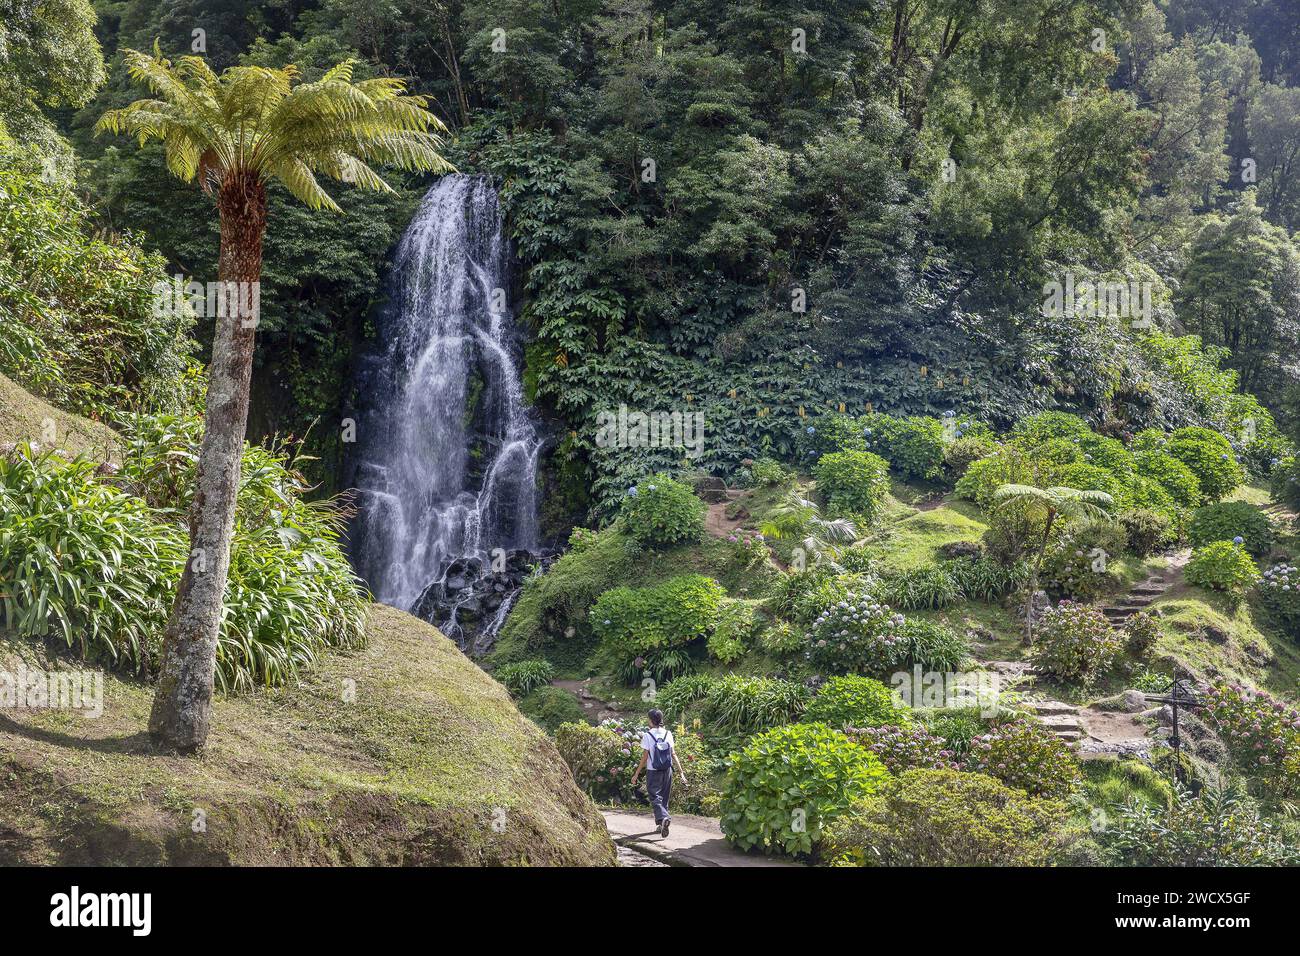 Portogallo, arcipelago delle Azzorre, isola di Sao Miguel, Parque Ribeira dos Caldeiroes, giovane donna che cammina su un sentiero nel mezzo di un parco con vegetazione esuberante dove scorre una cascata Foto Stock